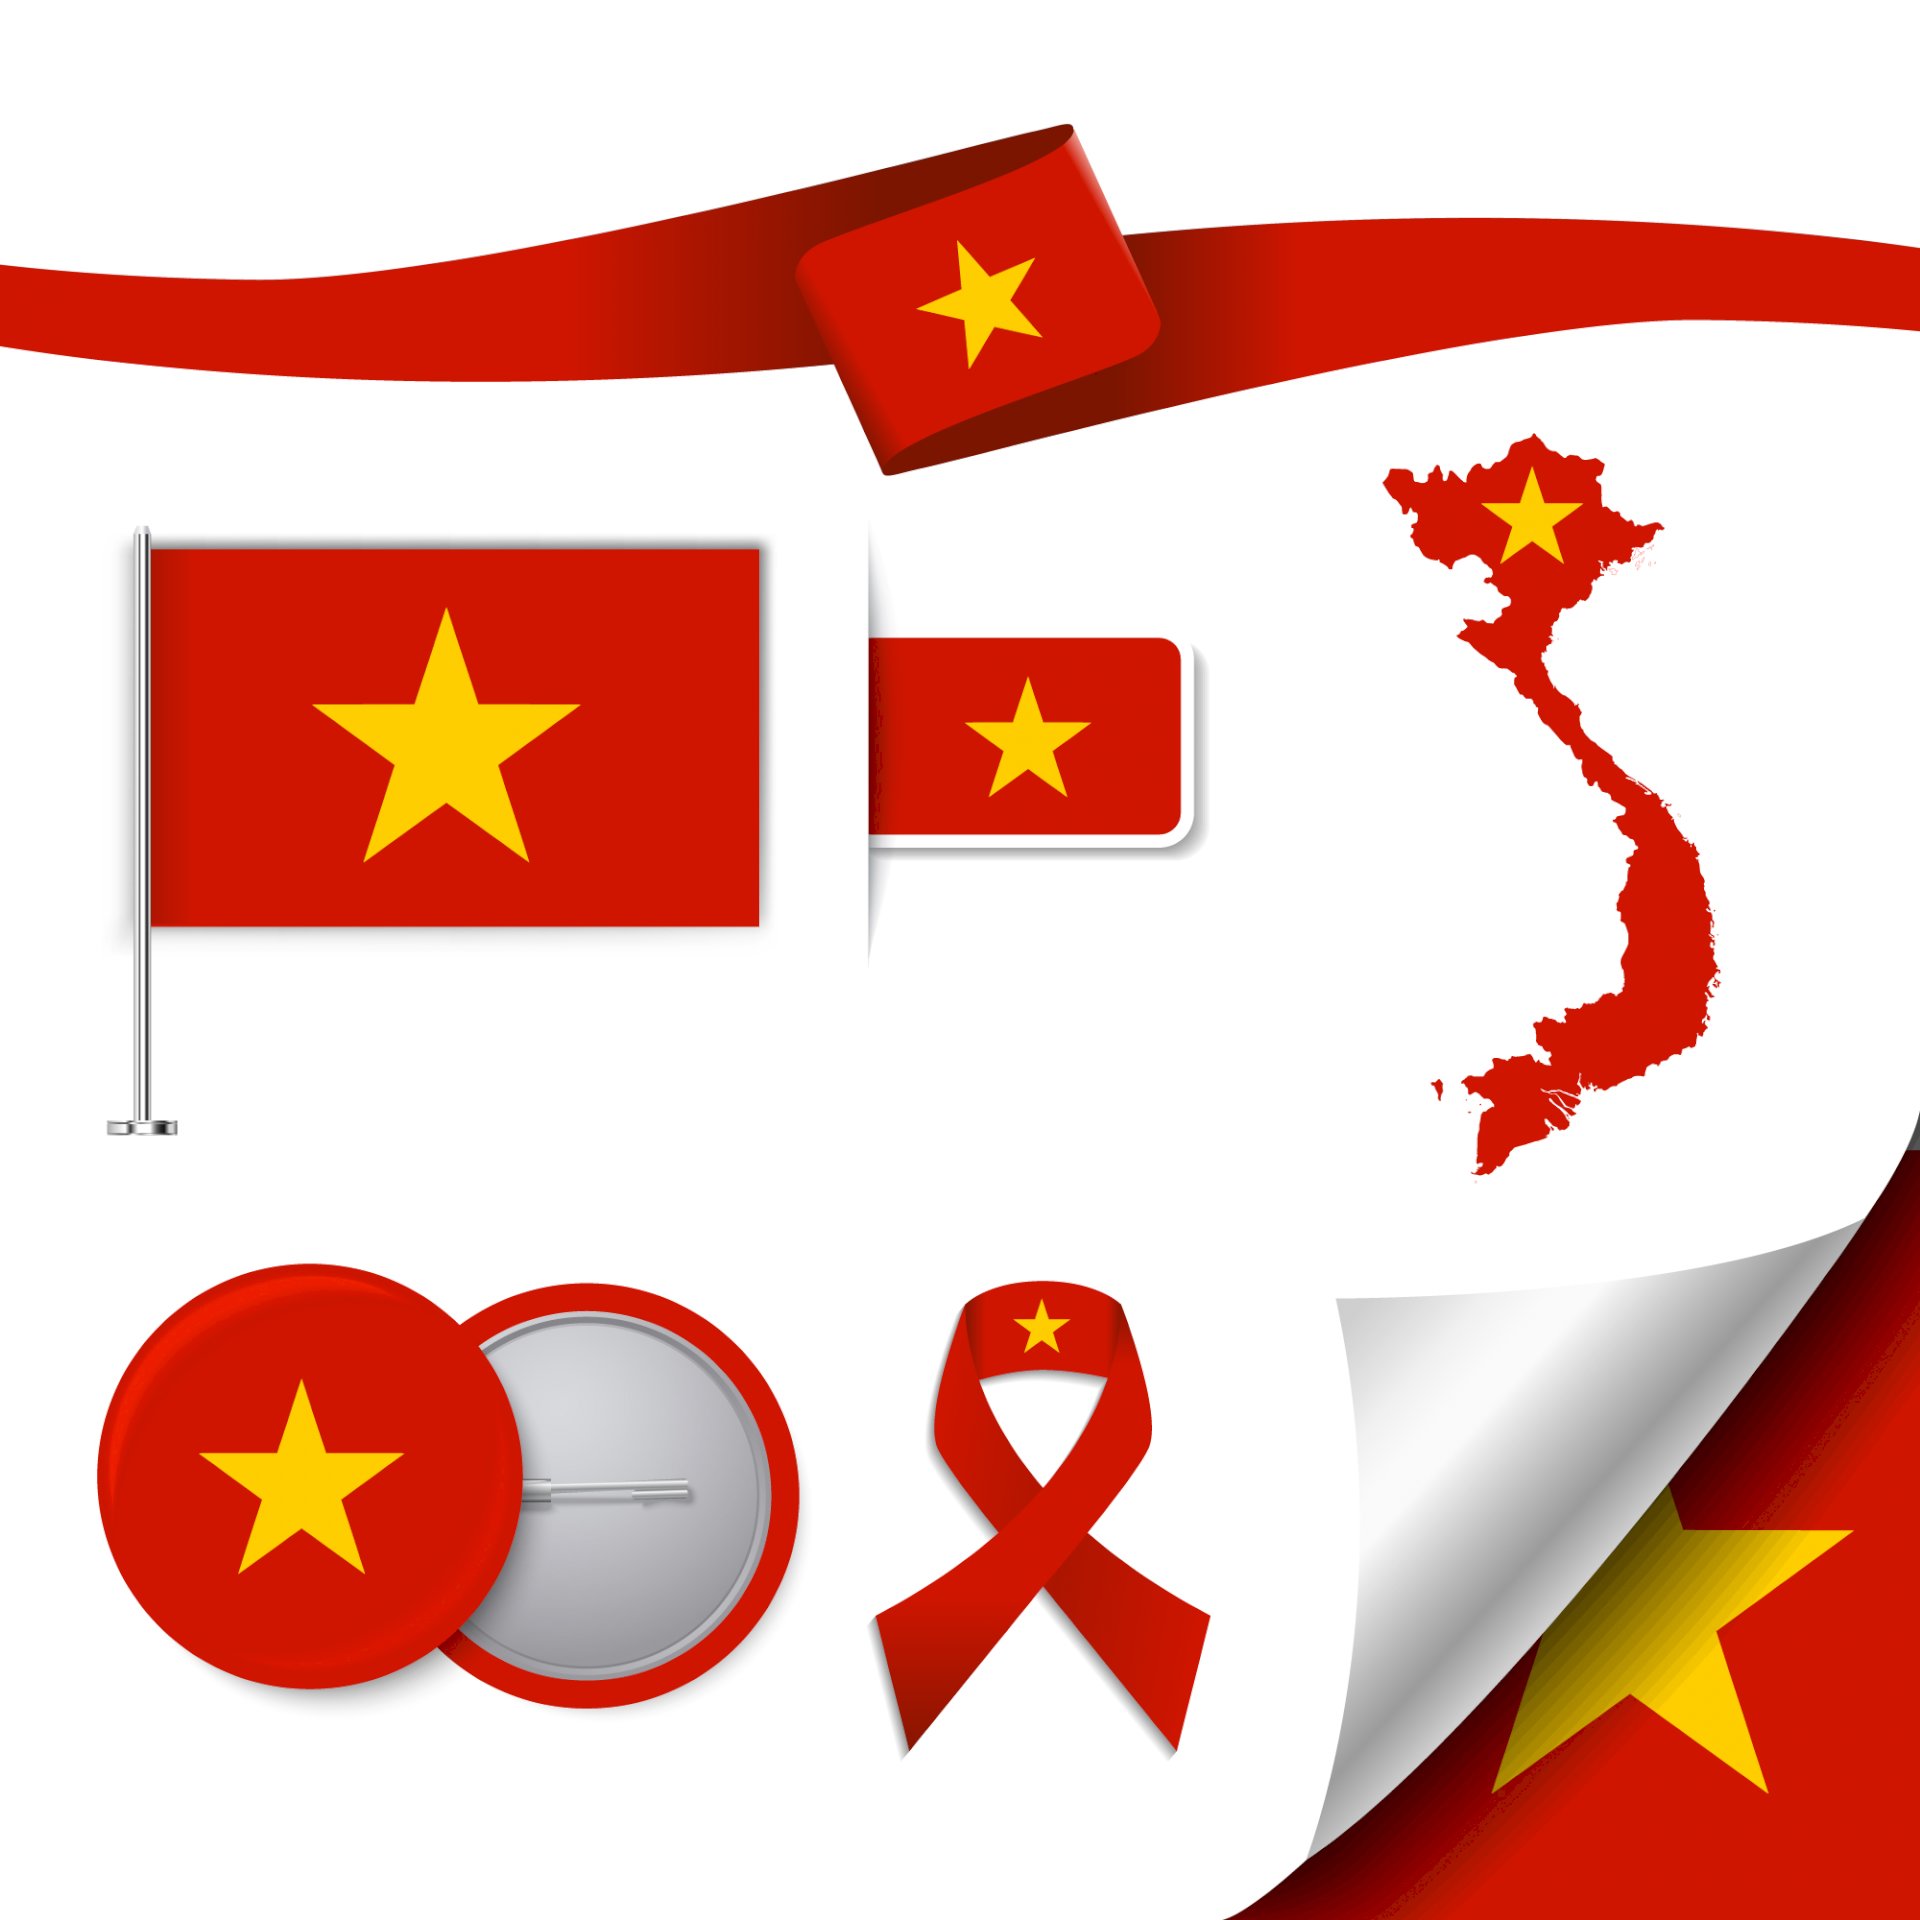 Logo lá cờ Việt Nam: Bạn muốn xem những logo lá cờ Việt Nam đầy sáng tạo, cập nhật mới nhất với thiết kế sang trọng, hiện đại nhưng với đậm chất dân tộc, tình yêu đất nước? Hãy đến với chúng tôi để cùng khám phá và ngắm nhìn những hình ảnh tuyệt đẹp đó nhé!